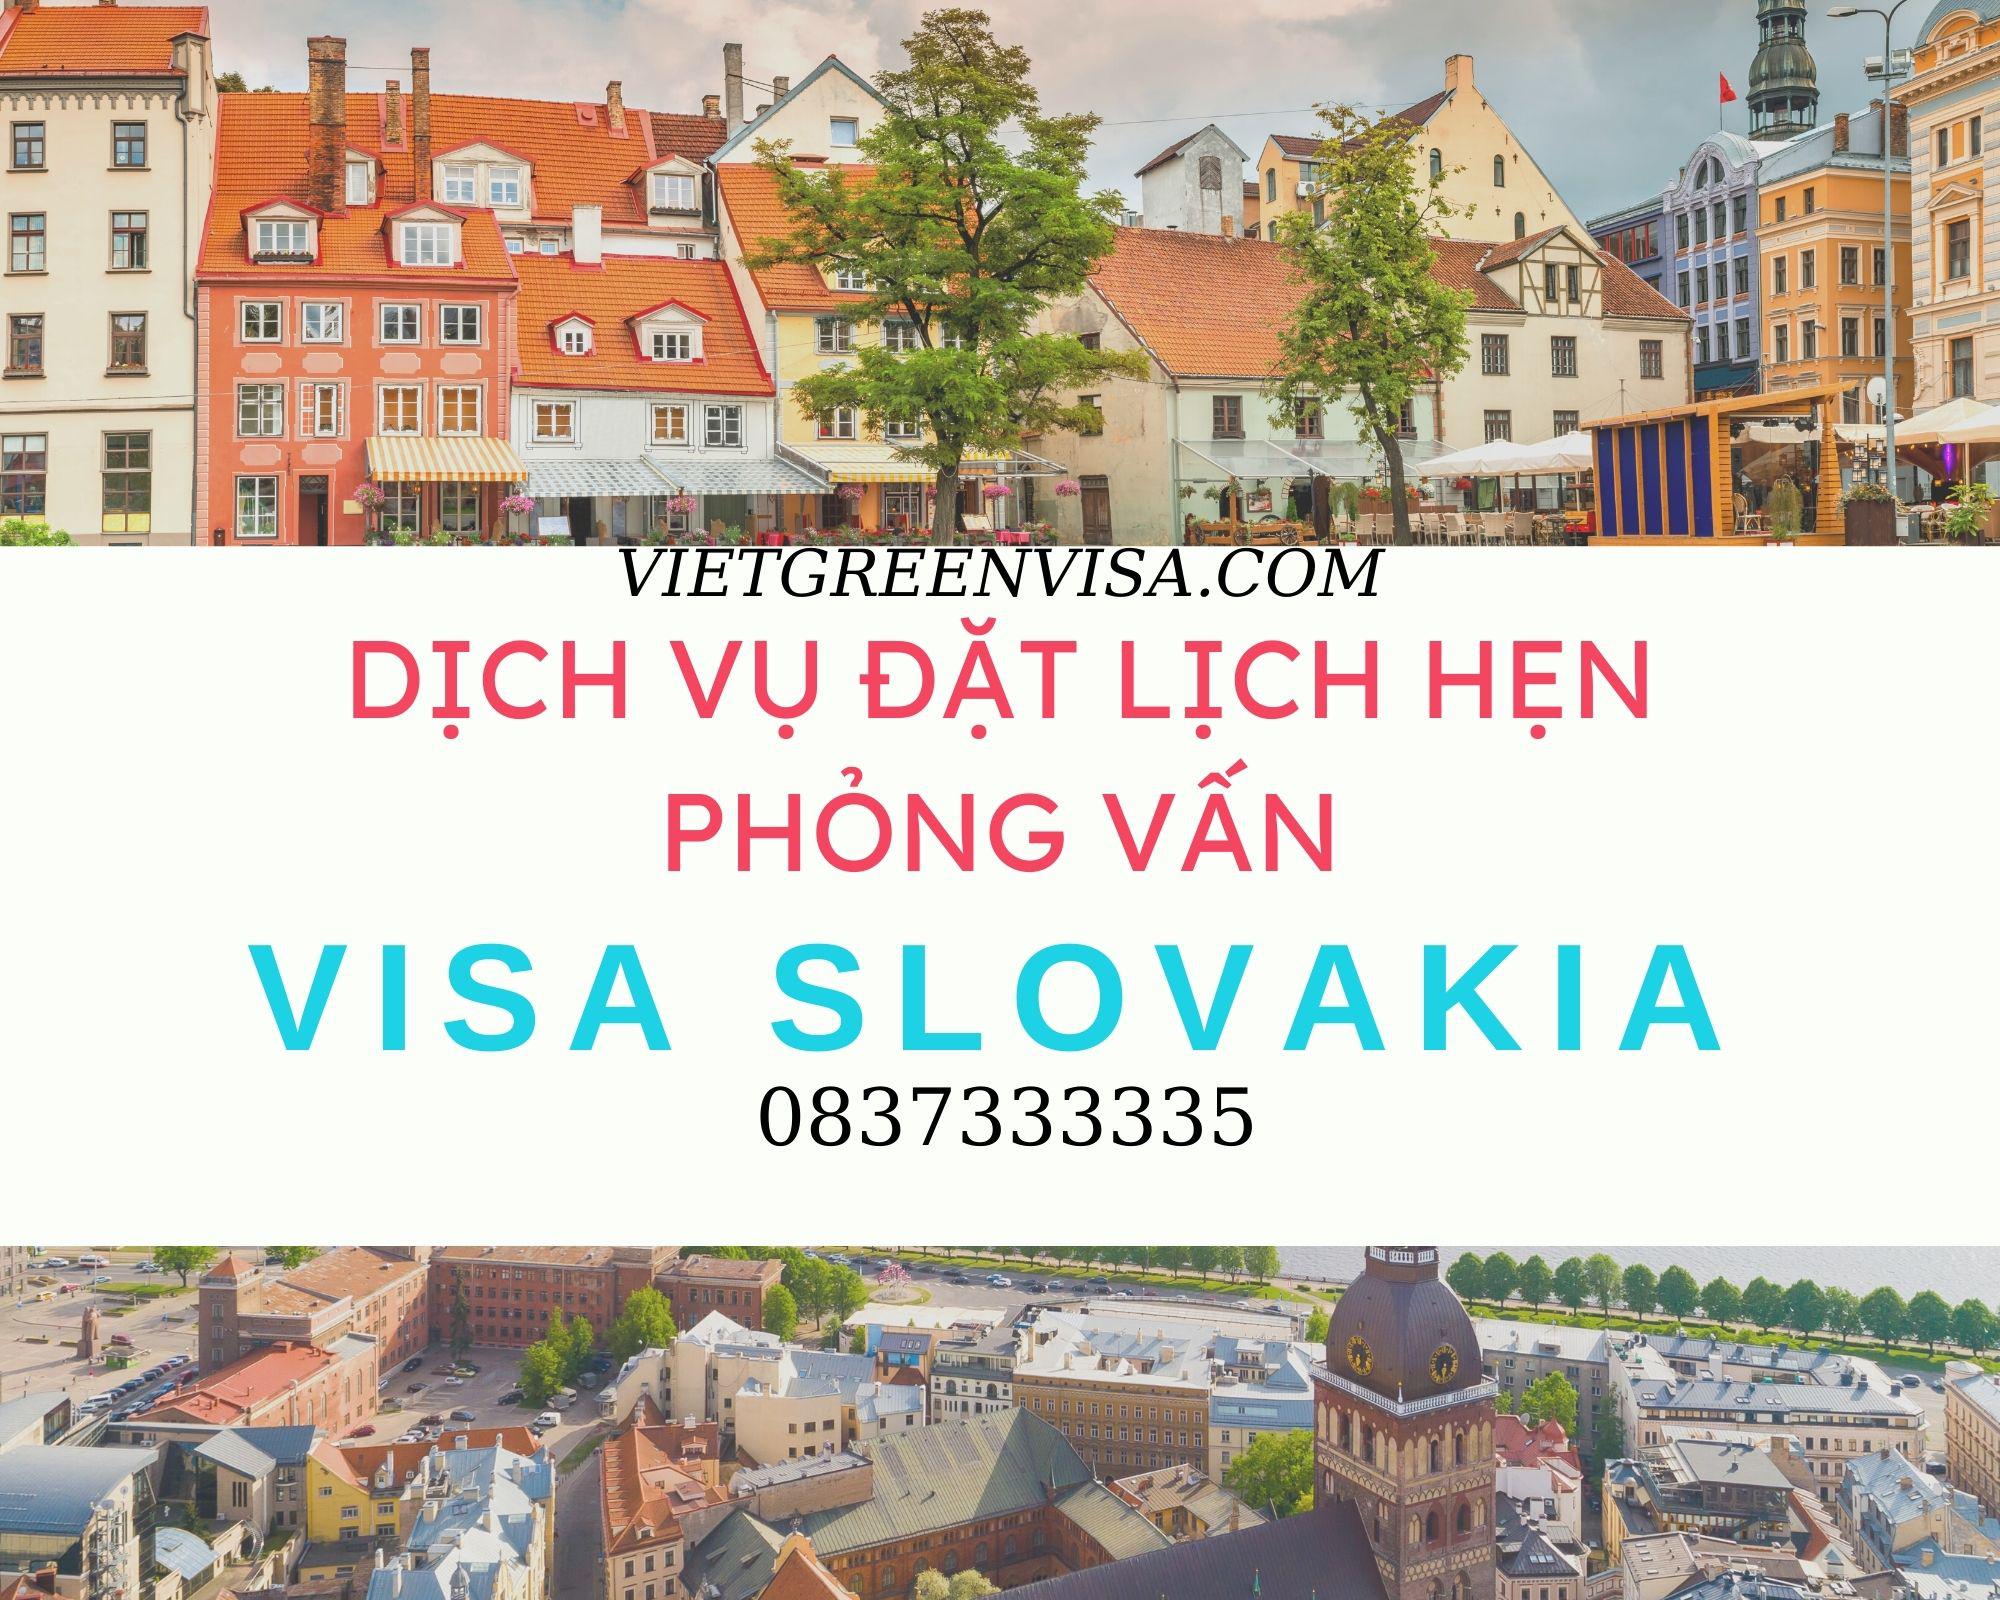 Dịch vụ đặt lịch hẹn phỏng vấn visa Slovakia nhanh chóng